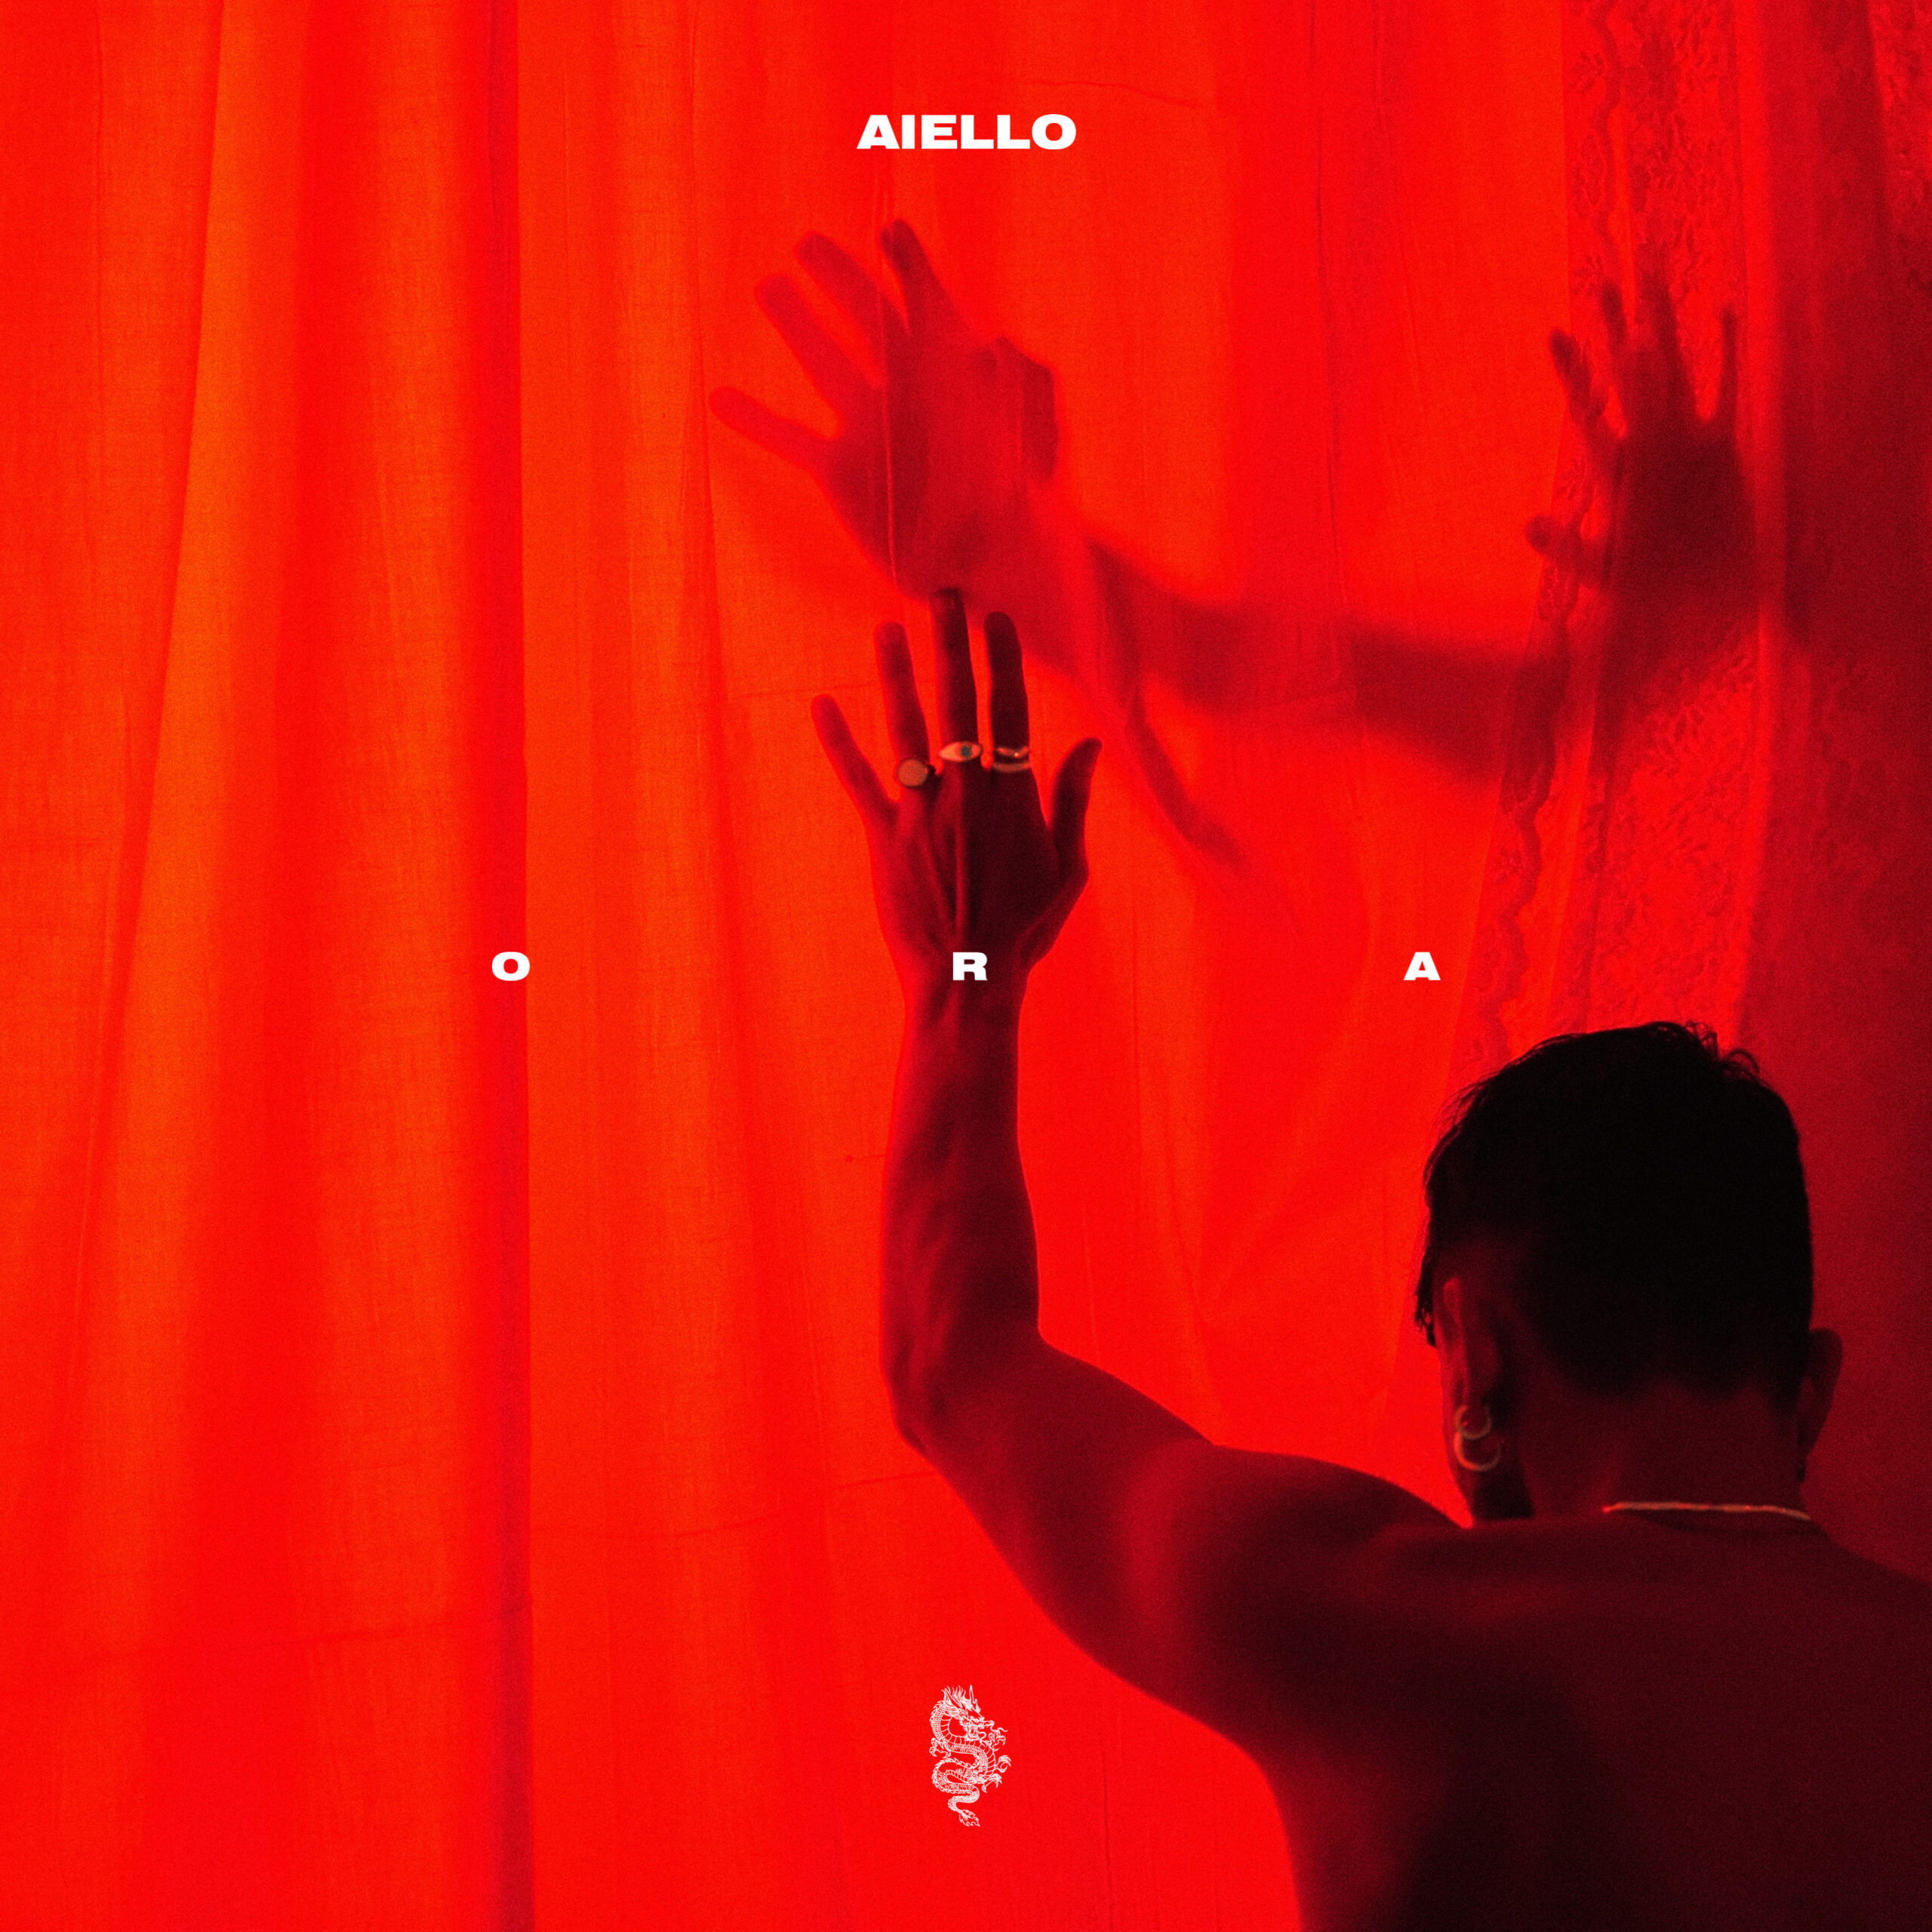 AIELLO — ORA cover artwork